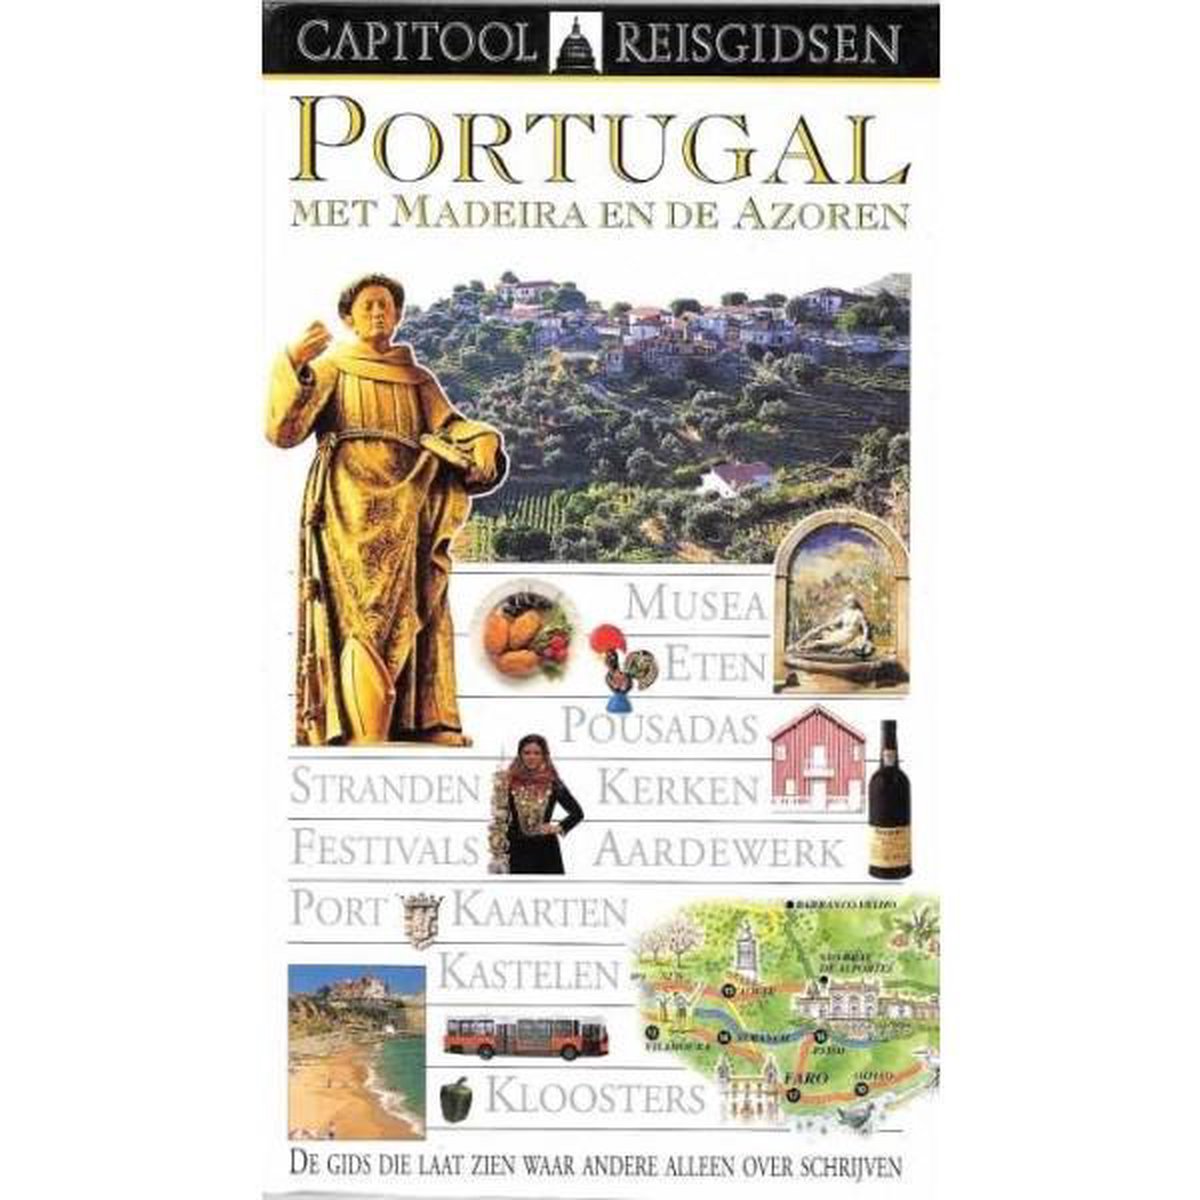 Capitool reisgids Portugal met Madeira en de Azoren